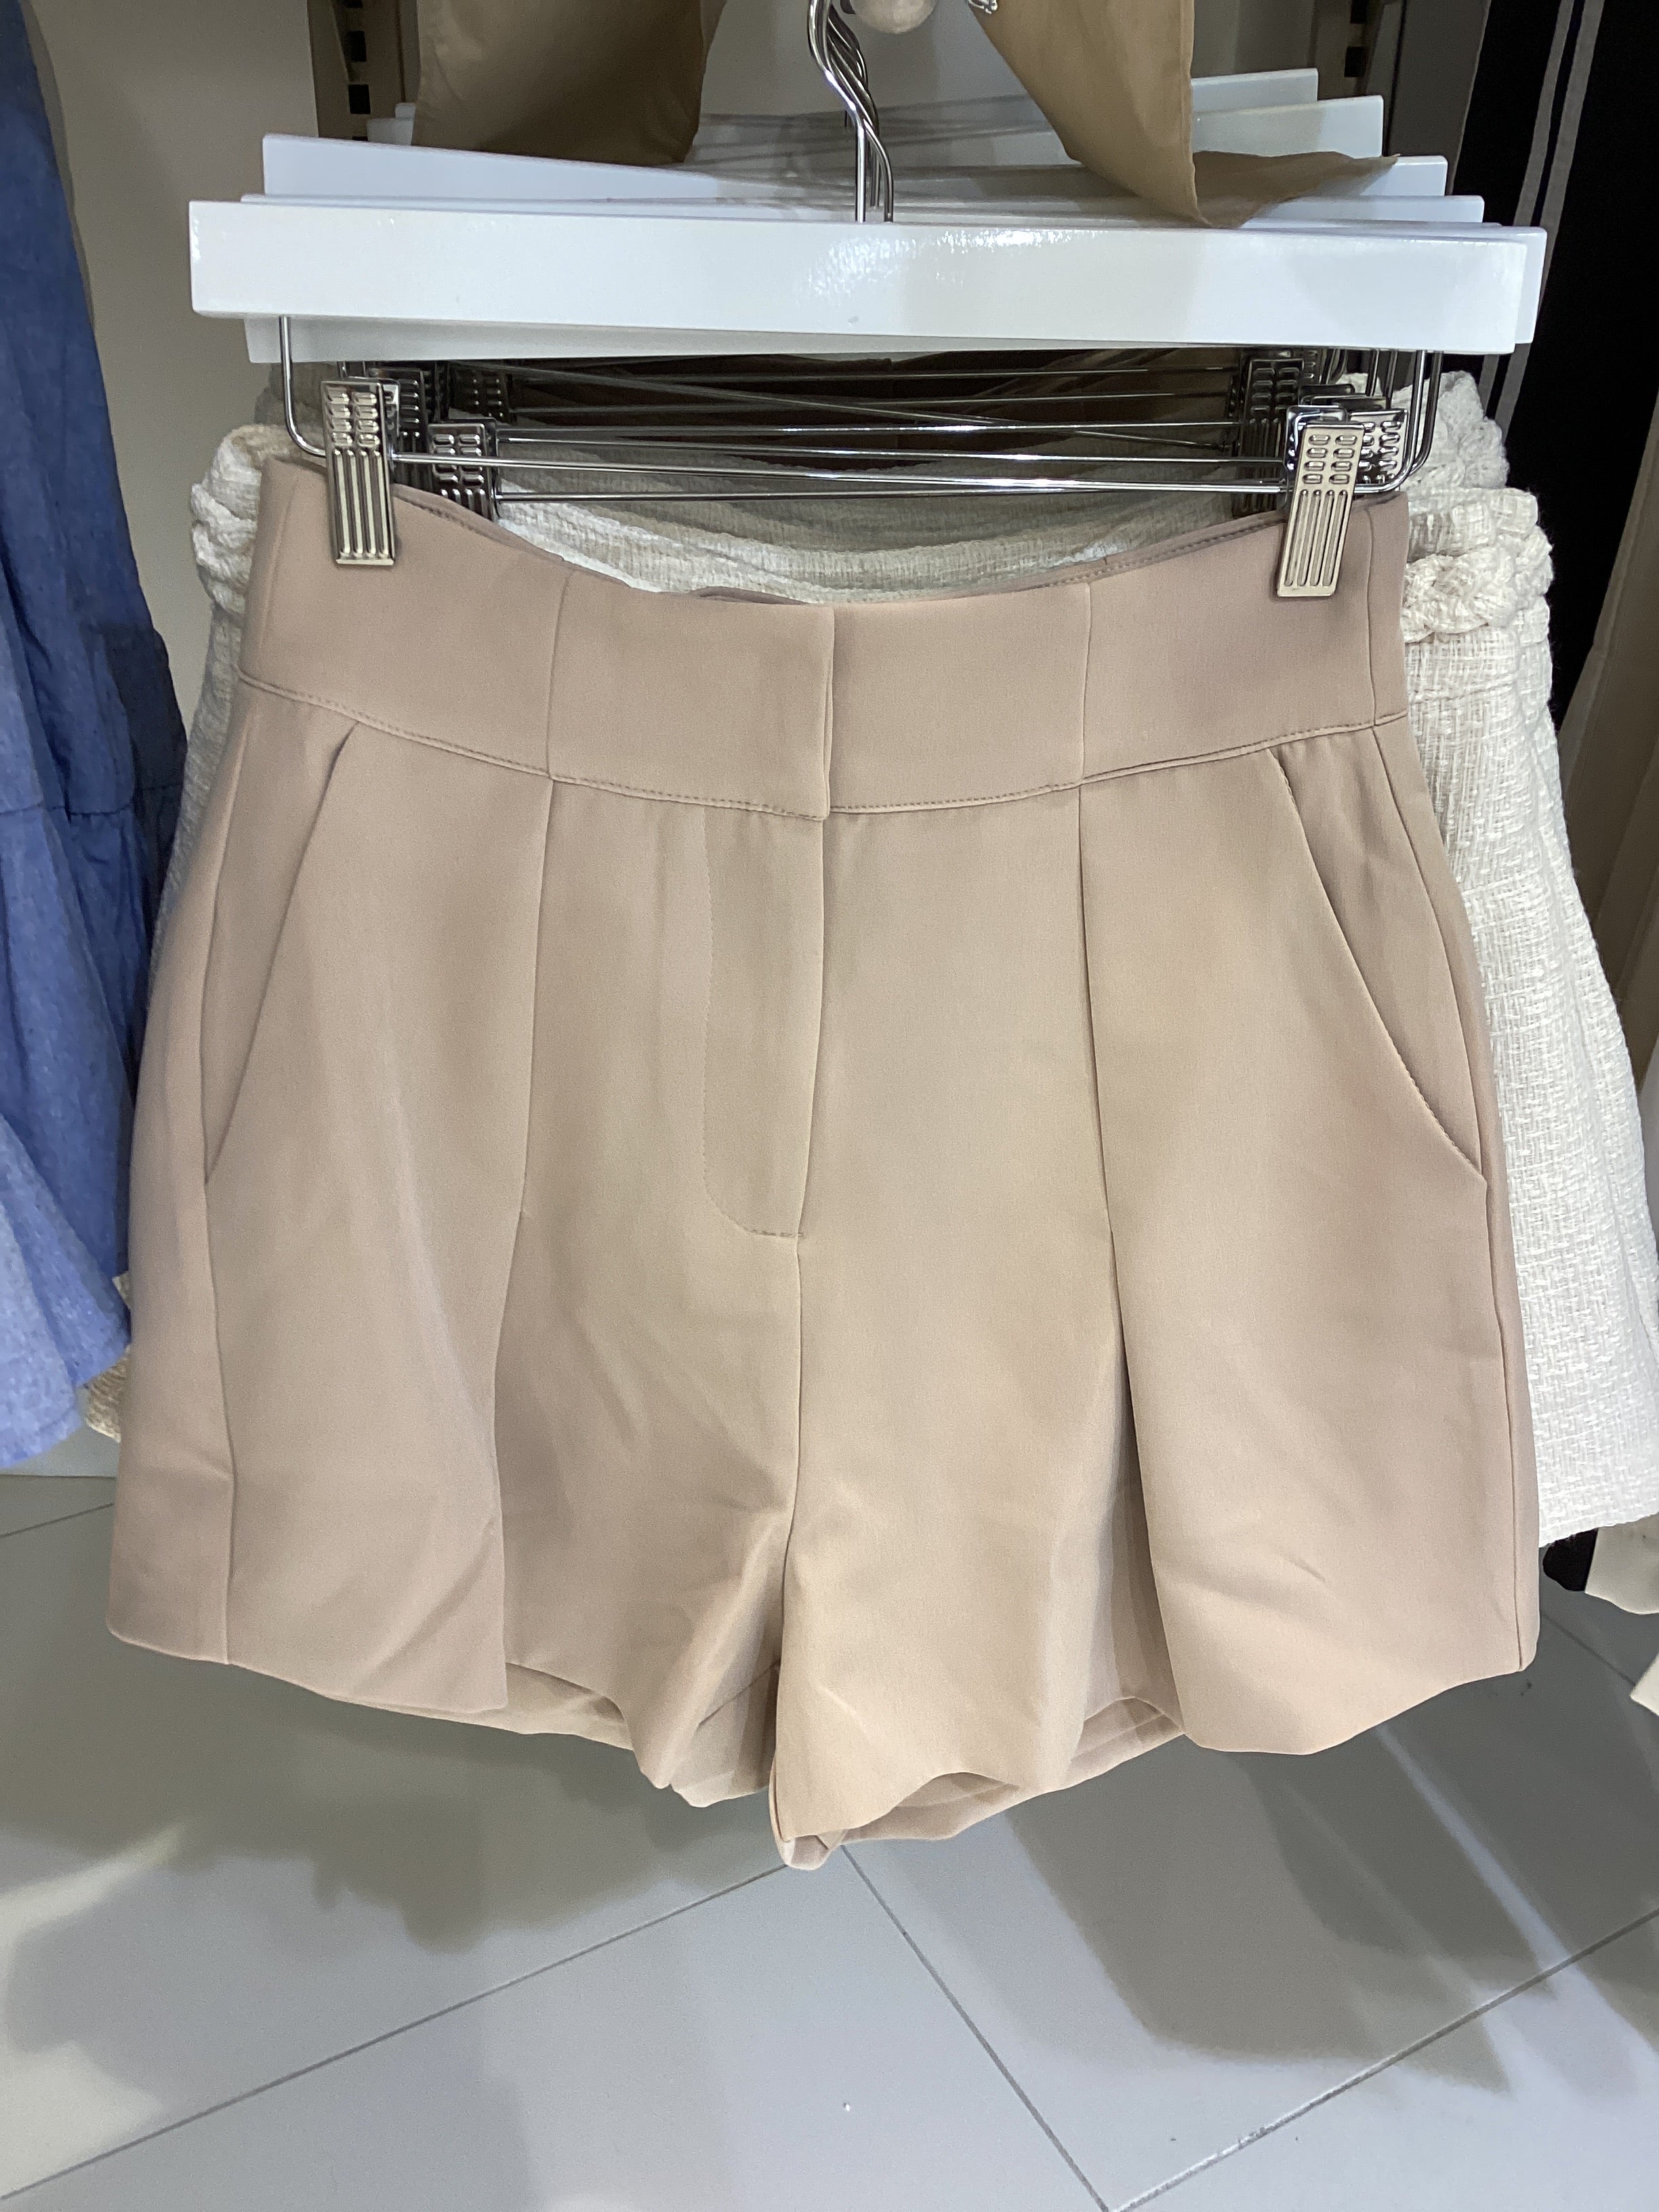 Flare short skirt